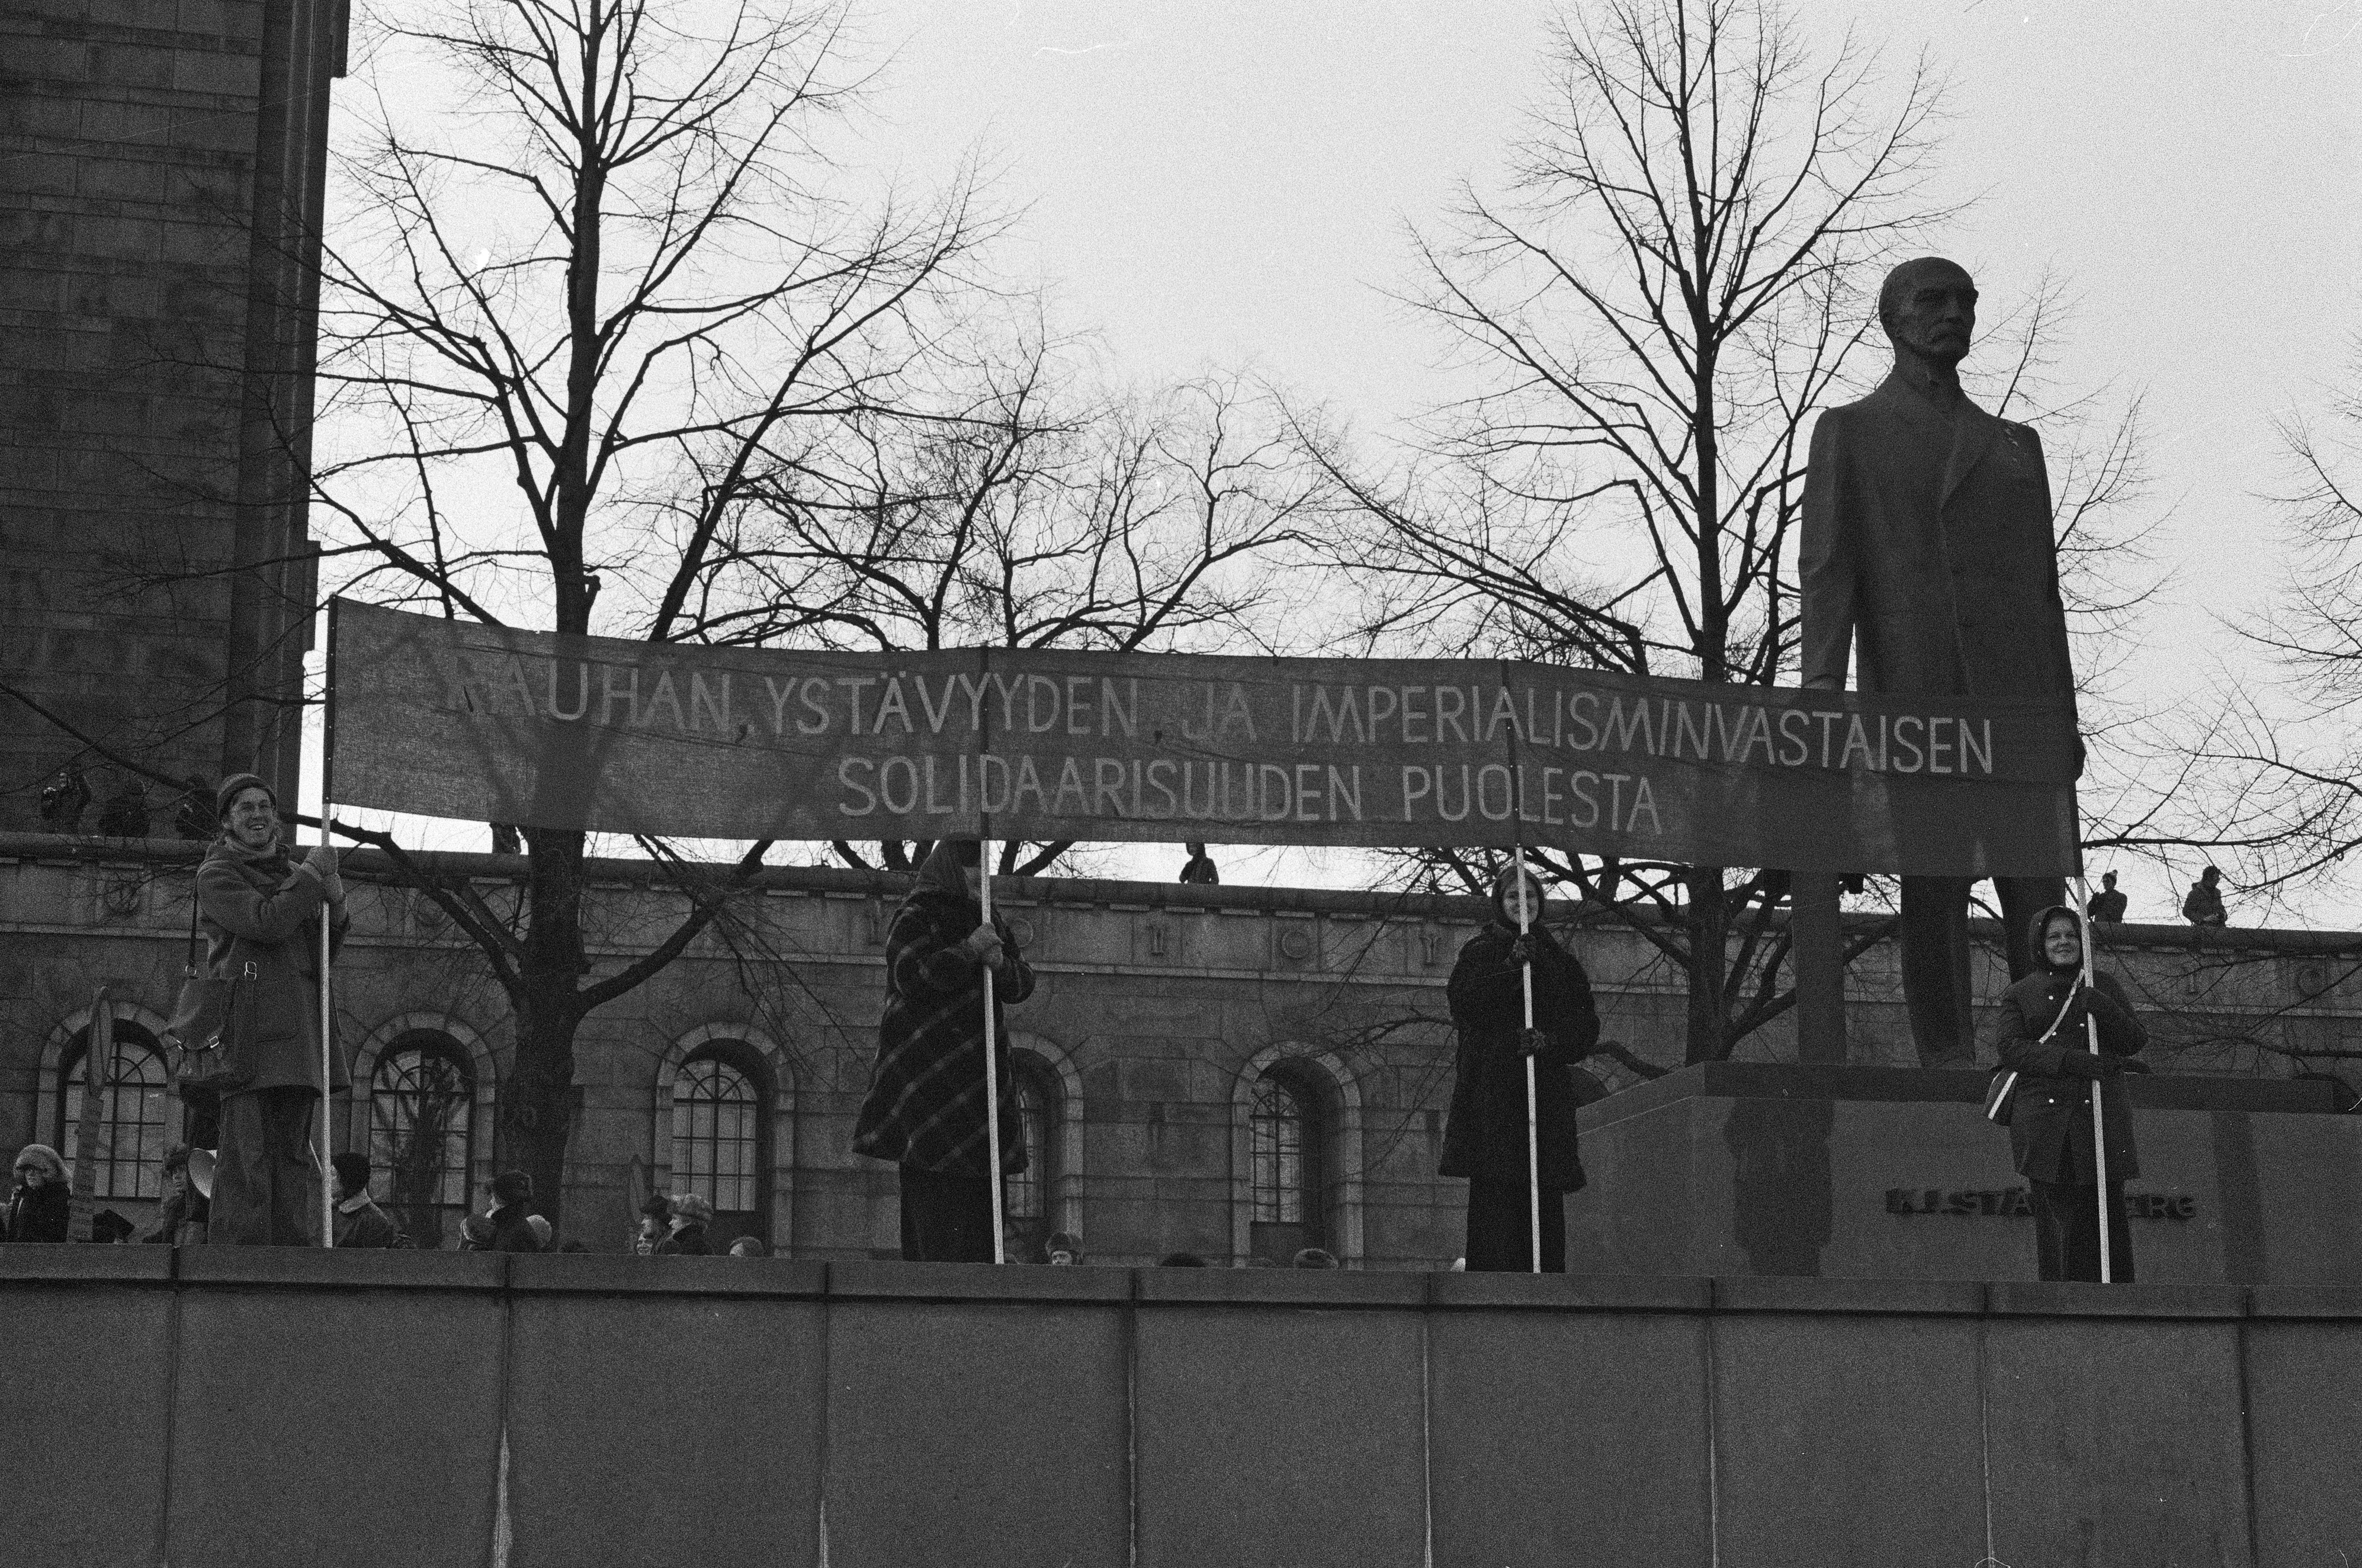 Mielenosoitus, jolla opiskelijaliike vaati yleistä ja yhtäläistä äänioikeutta (yyä) yliopistojen ja korkeakoulujen hallintoelinten valintaperusteeksi. Mielenosoittajia K. J. Ståhlbergin patsaalla Eduskuntalon edustalla.